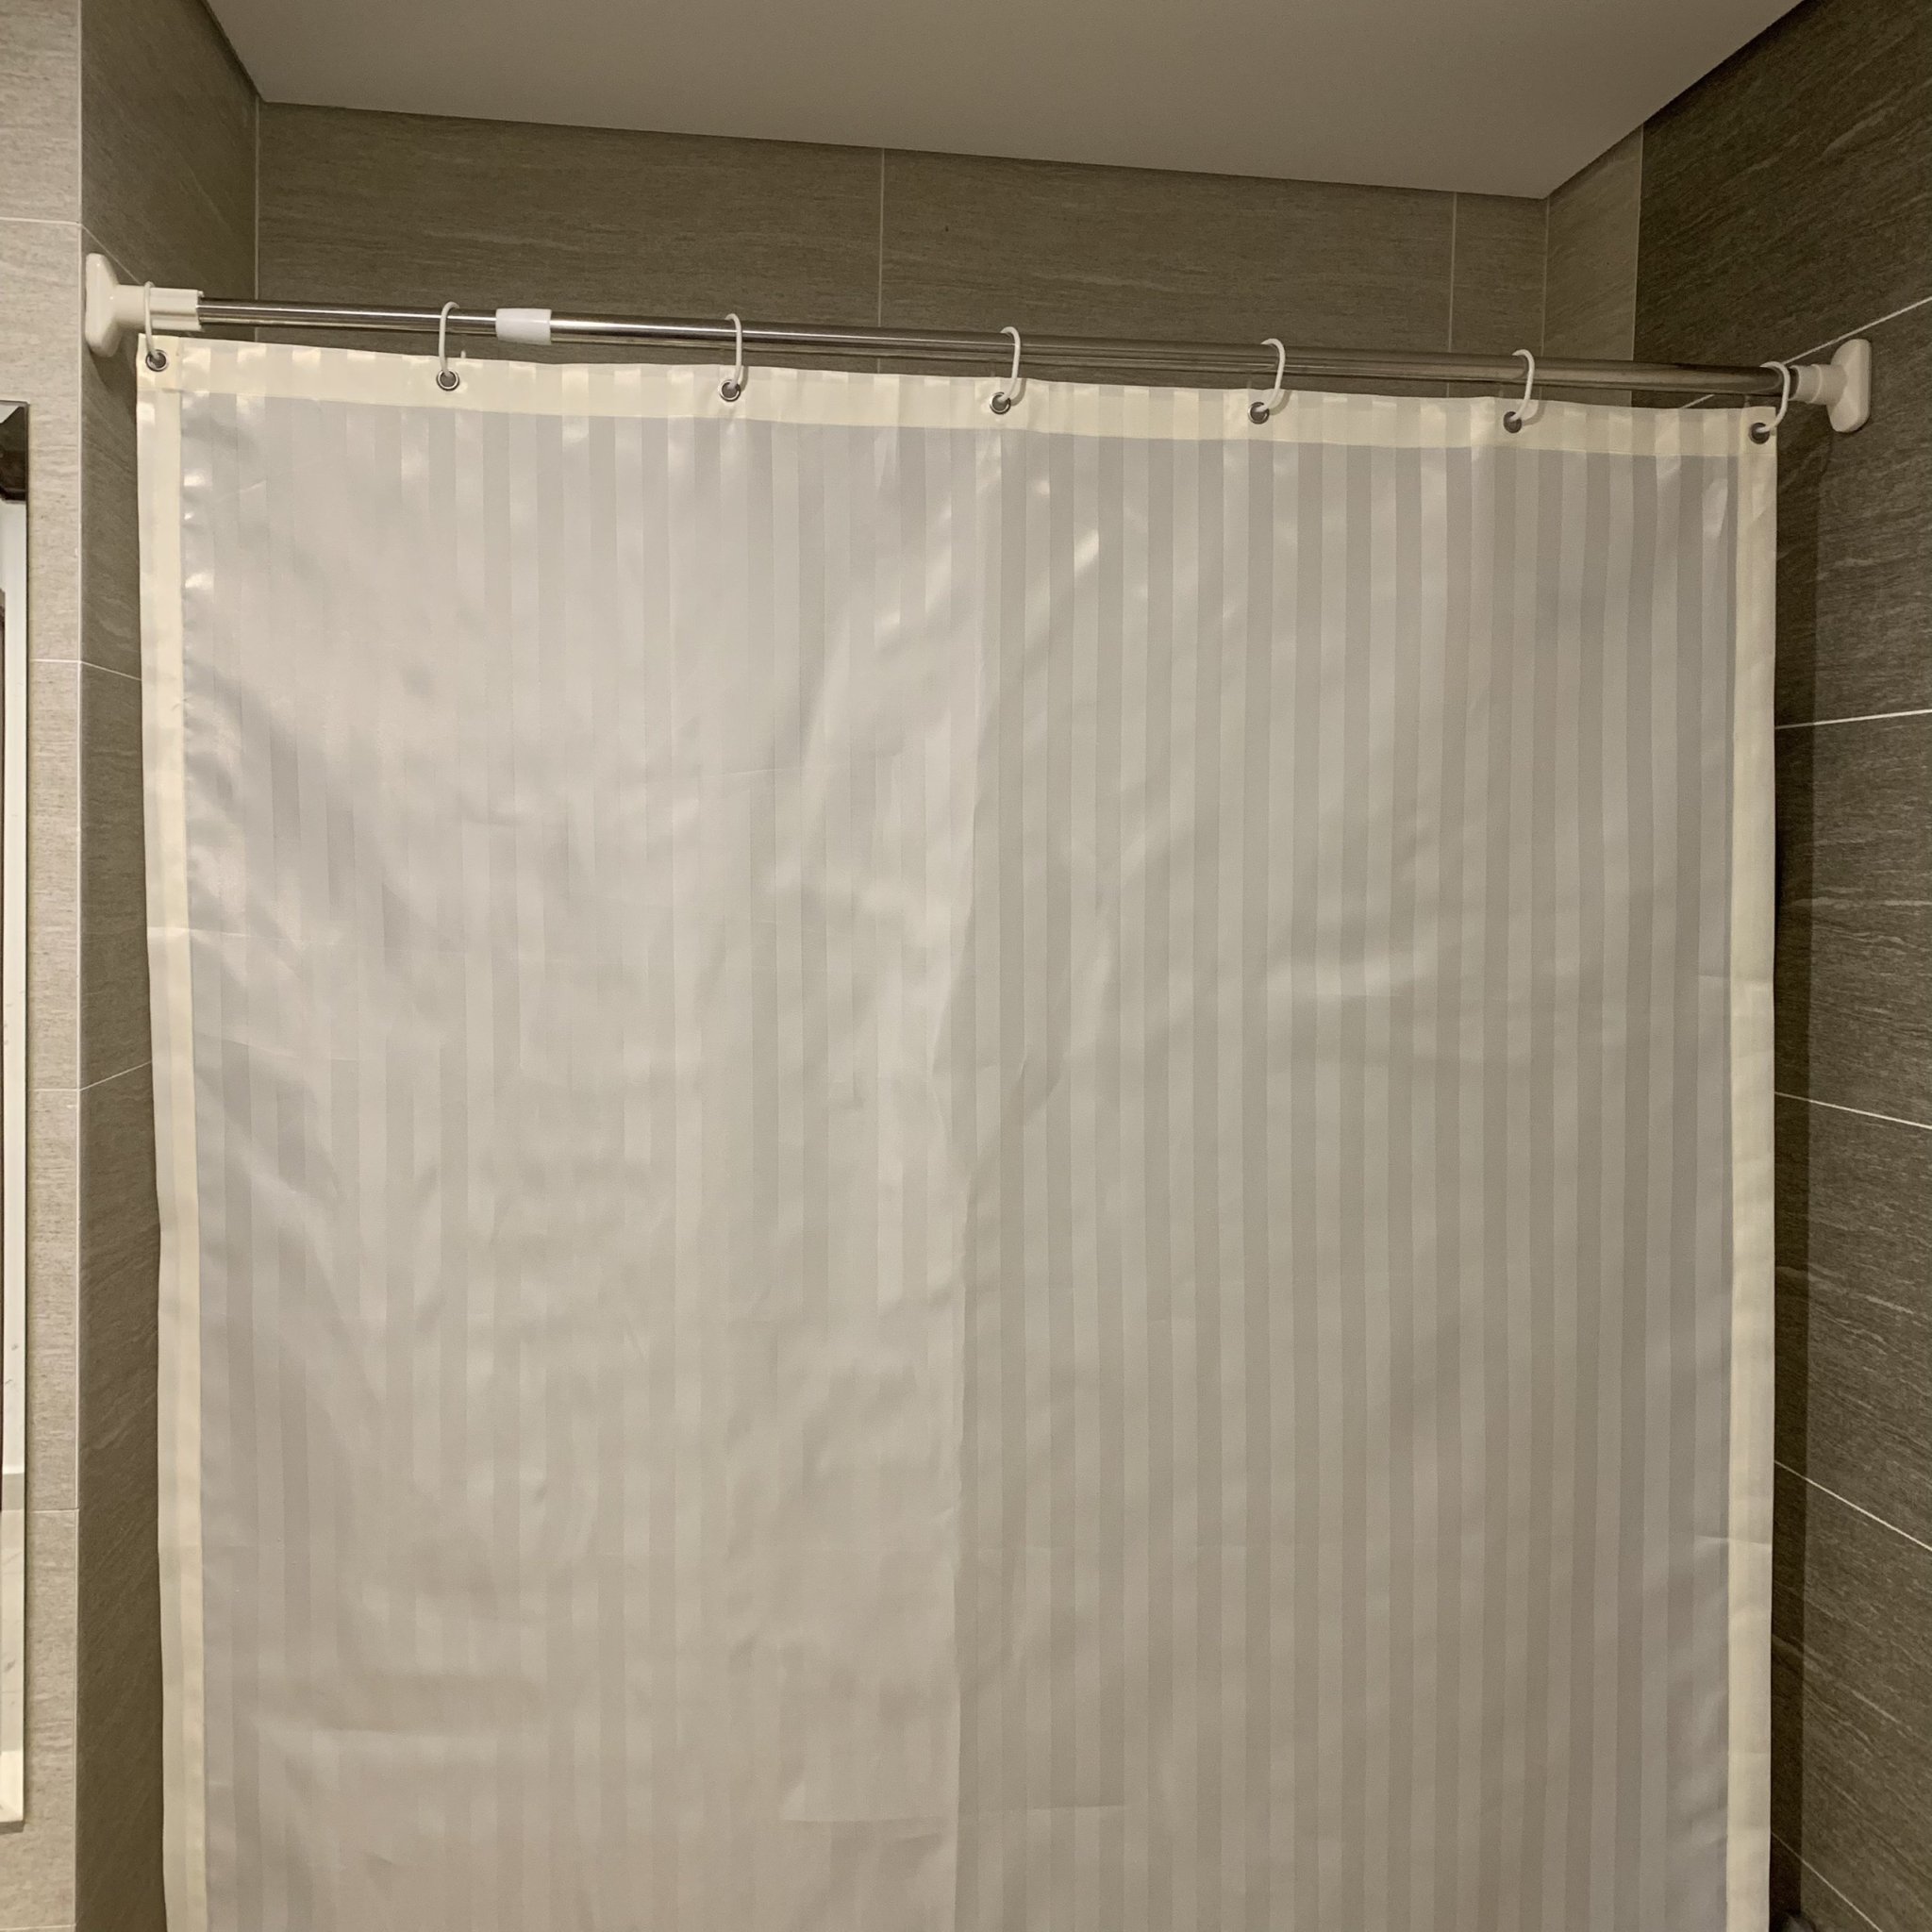 Rèm phòng tắm chống nước được nâng cấp với công nghệ cực kỳ hiện đại, sản phẩm sẽ giúp giữ phòng tắm của bạn luôn khô ráo, tránh sự cố sẩy nước không đáng có. Với lớp chống thấm, rèm phòng tắm cho bạn sự an toàn tuyệt đối trong mỗi lần sử dụng.